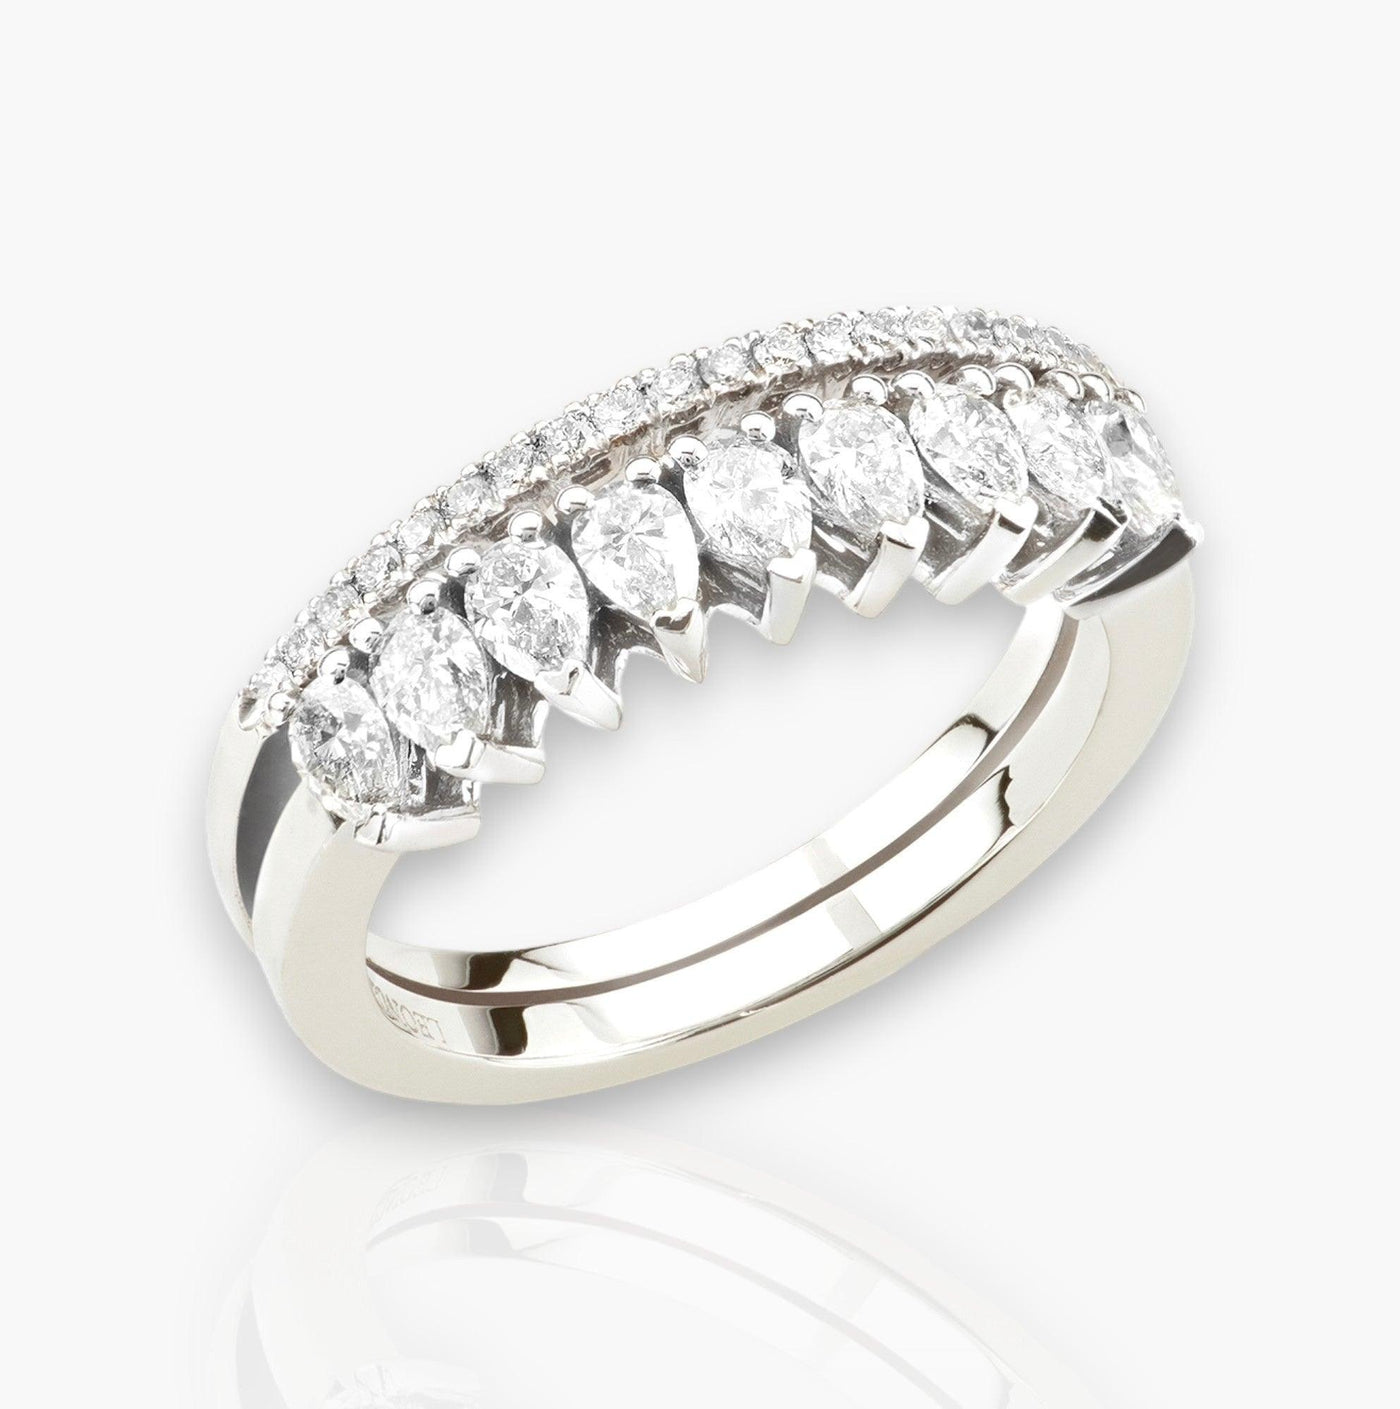 Riviera Ring In White Gold and Diamonds - Moregola Fine Jewelry